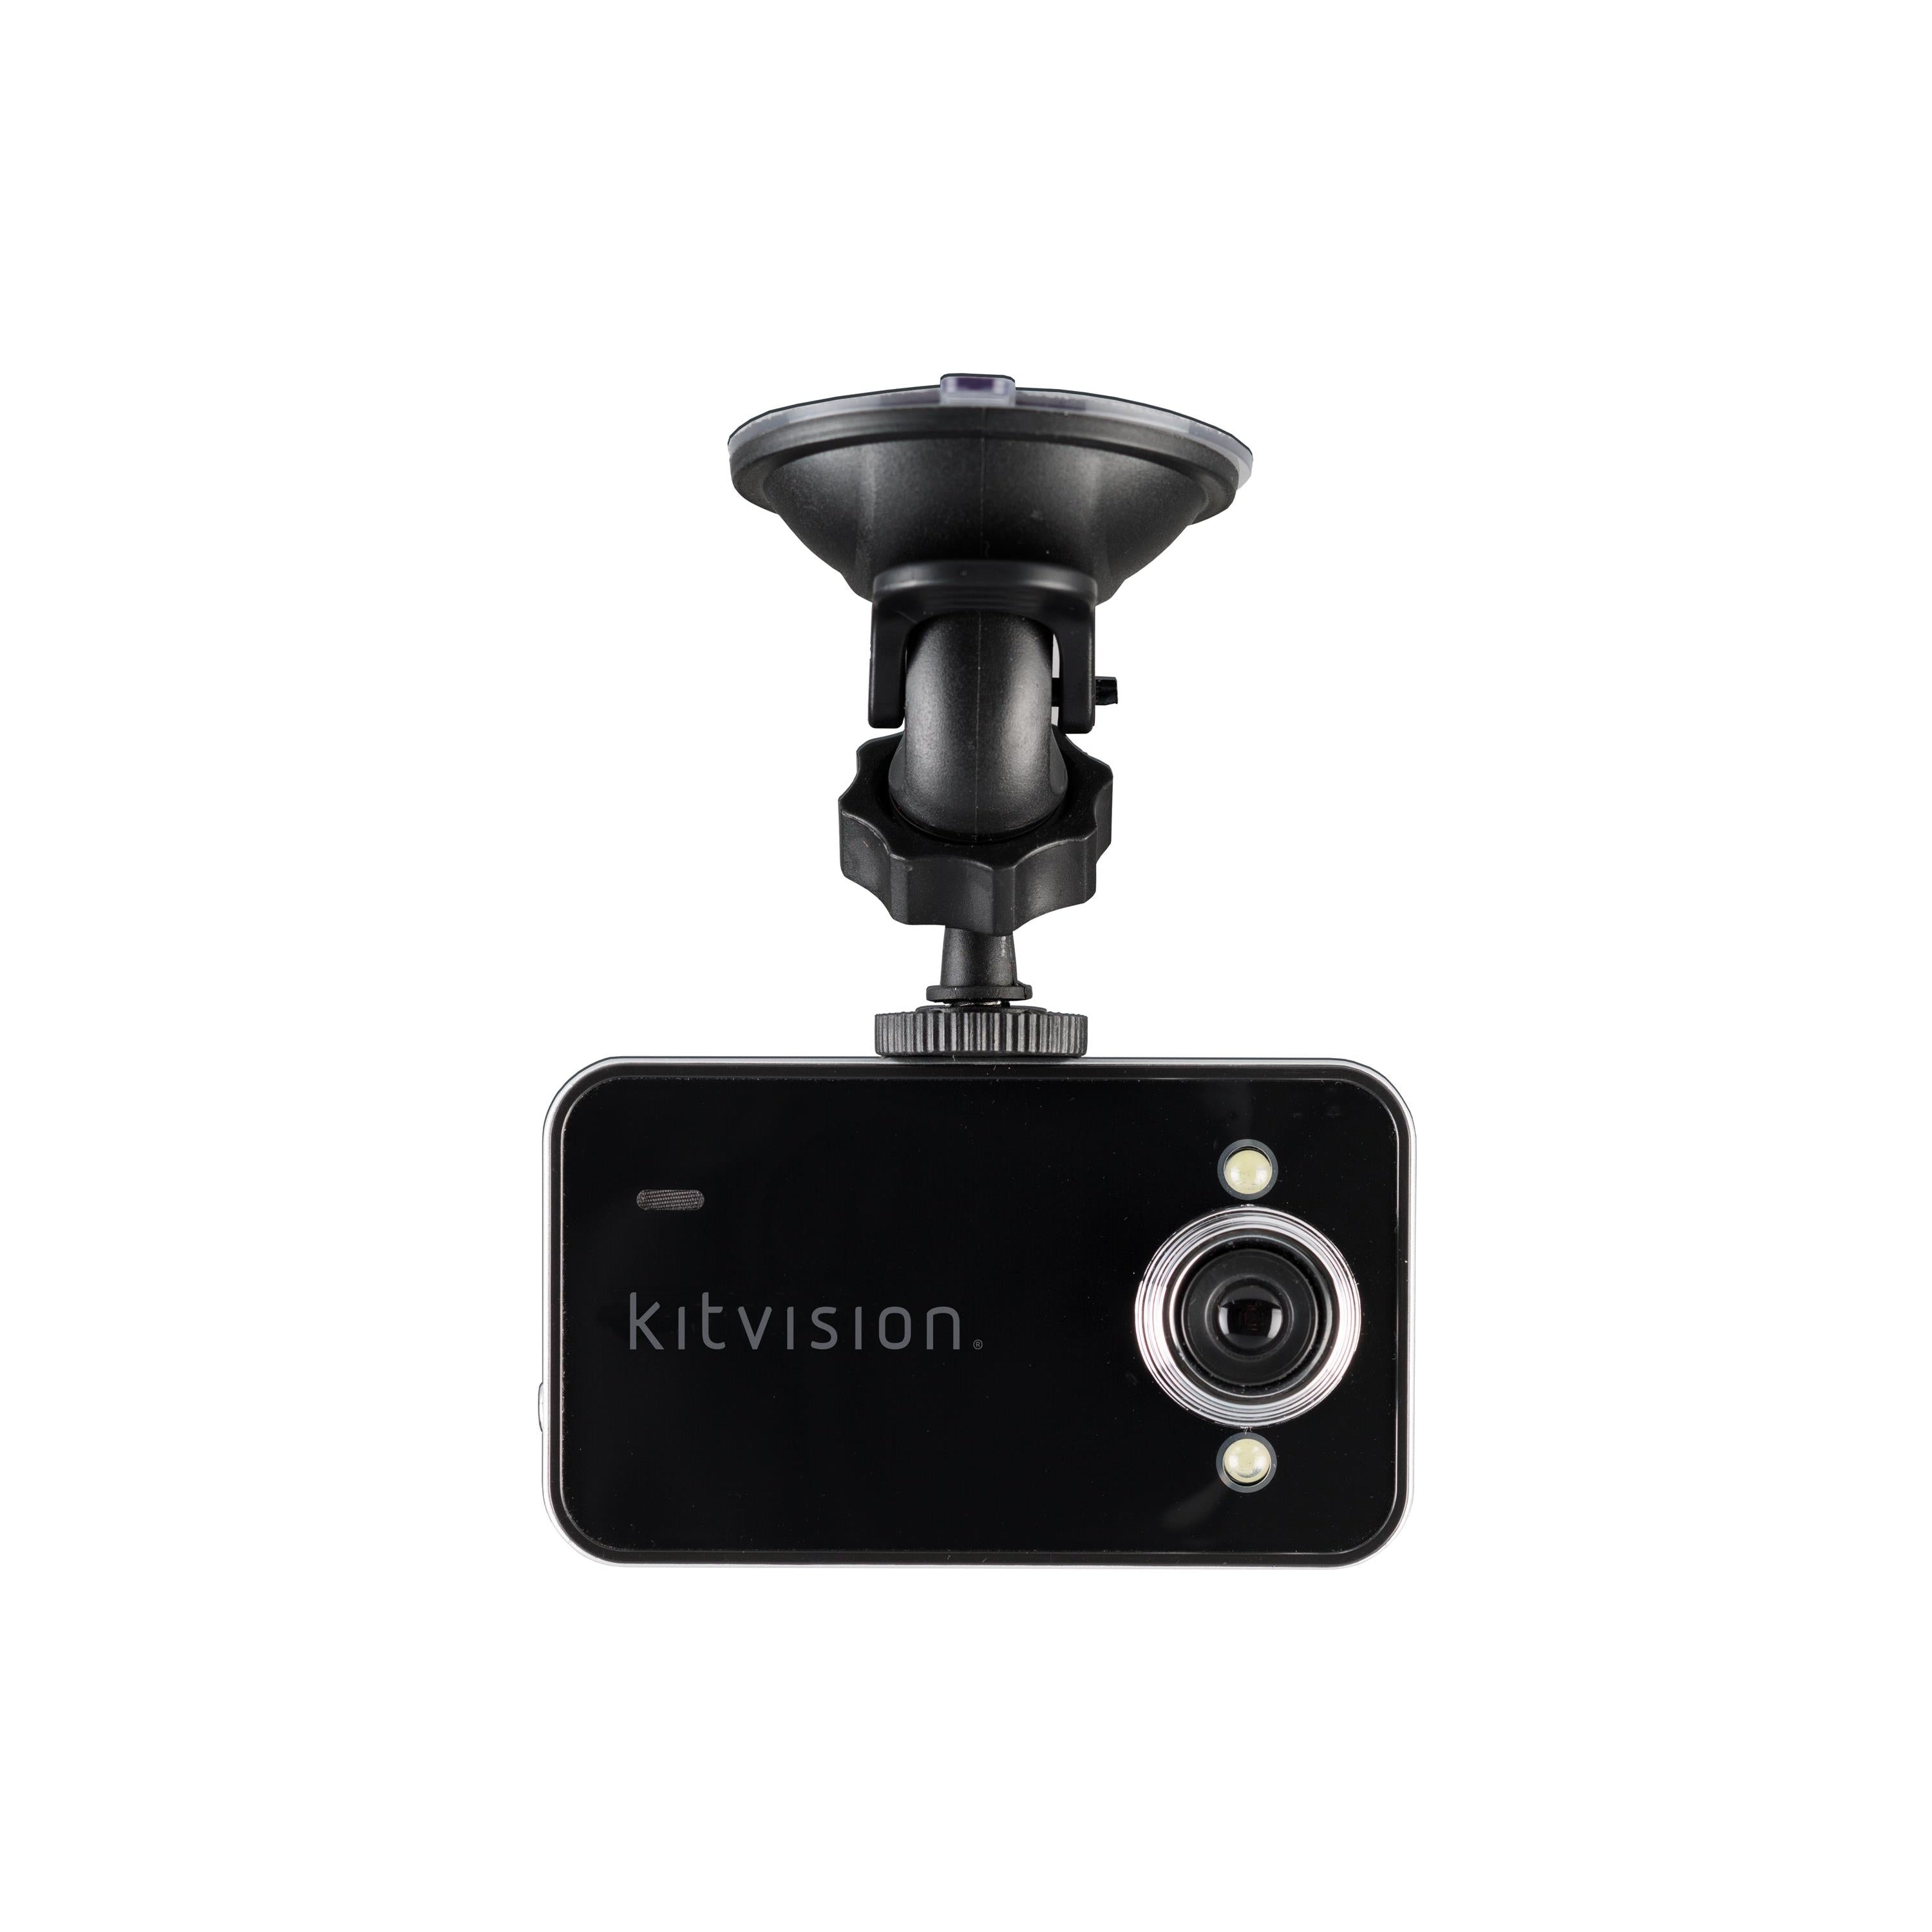 Kitvision KVDASHCAM 720p HD Dash Camera - Refurbished Pristine